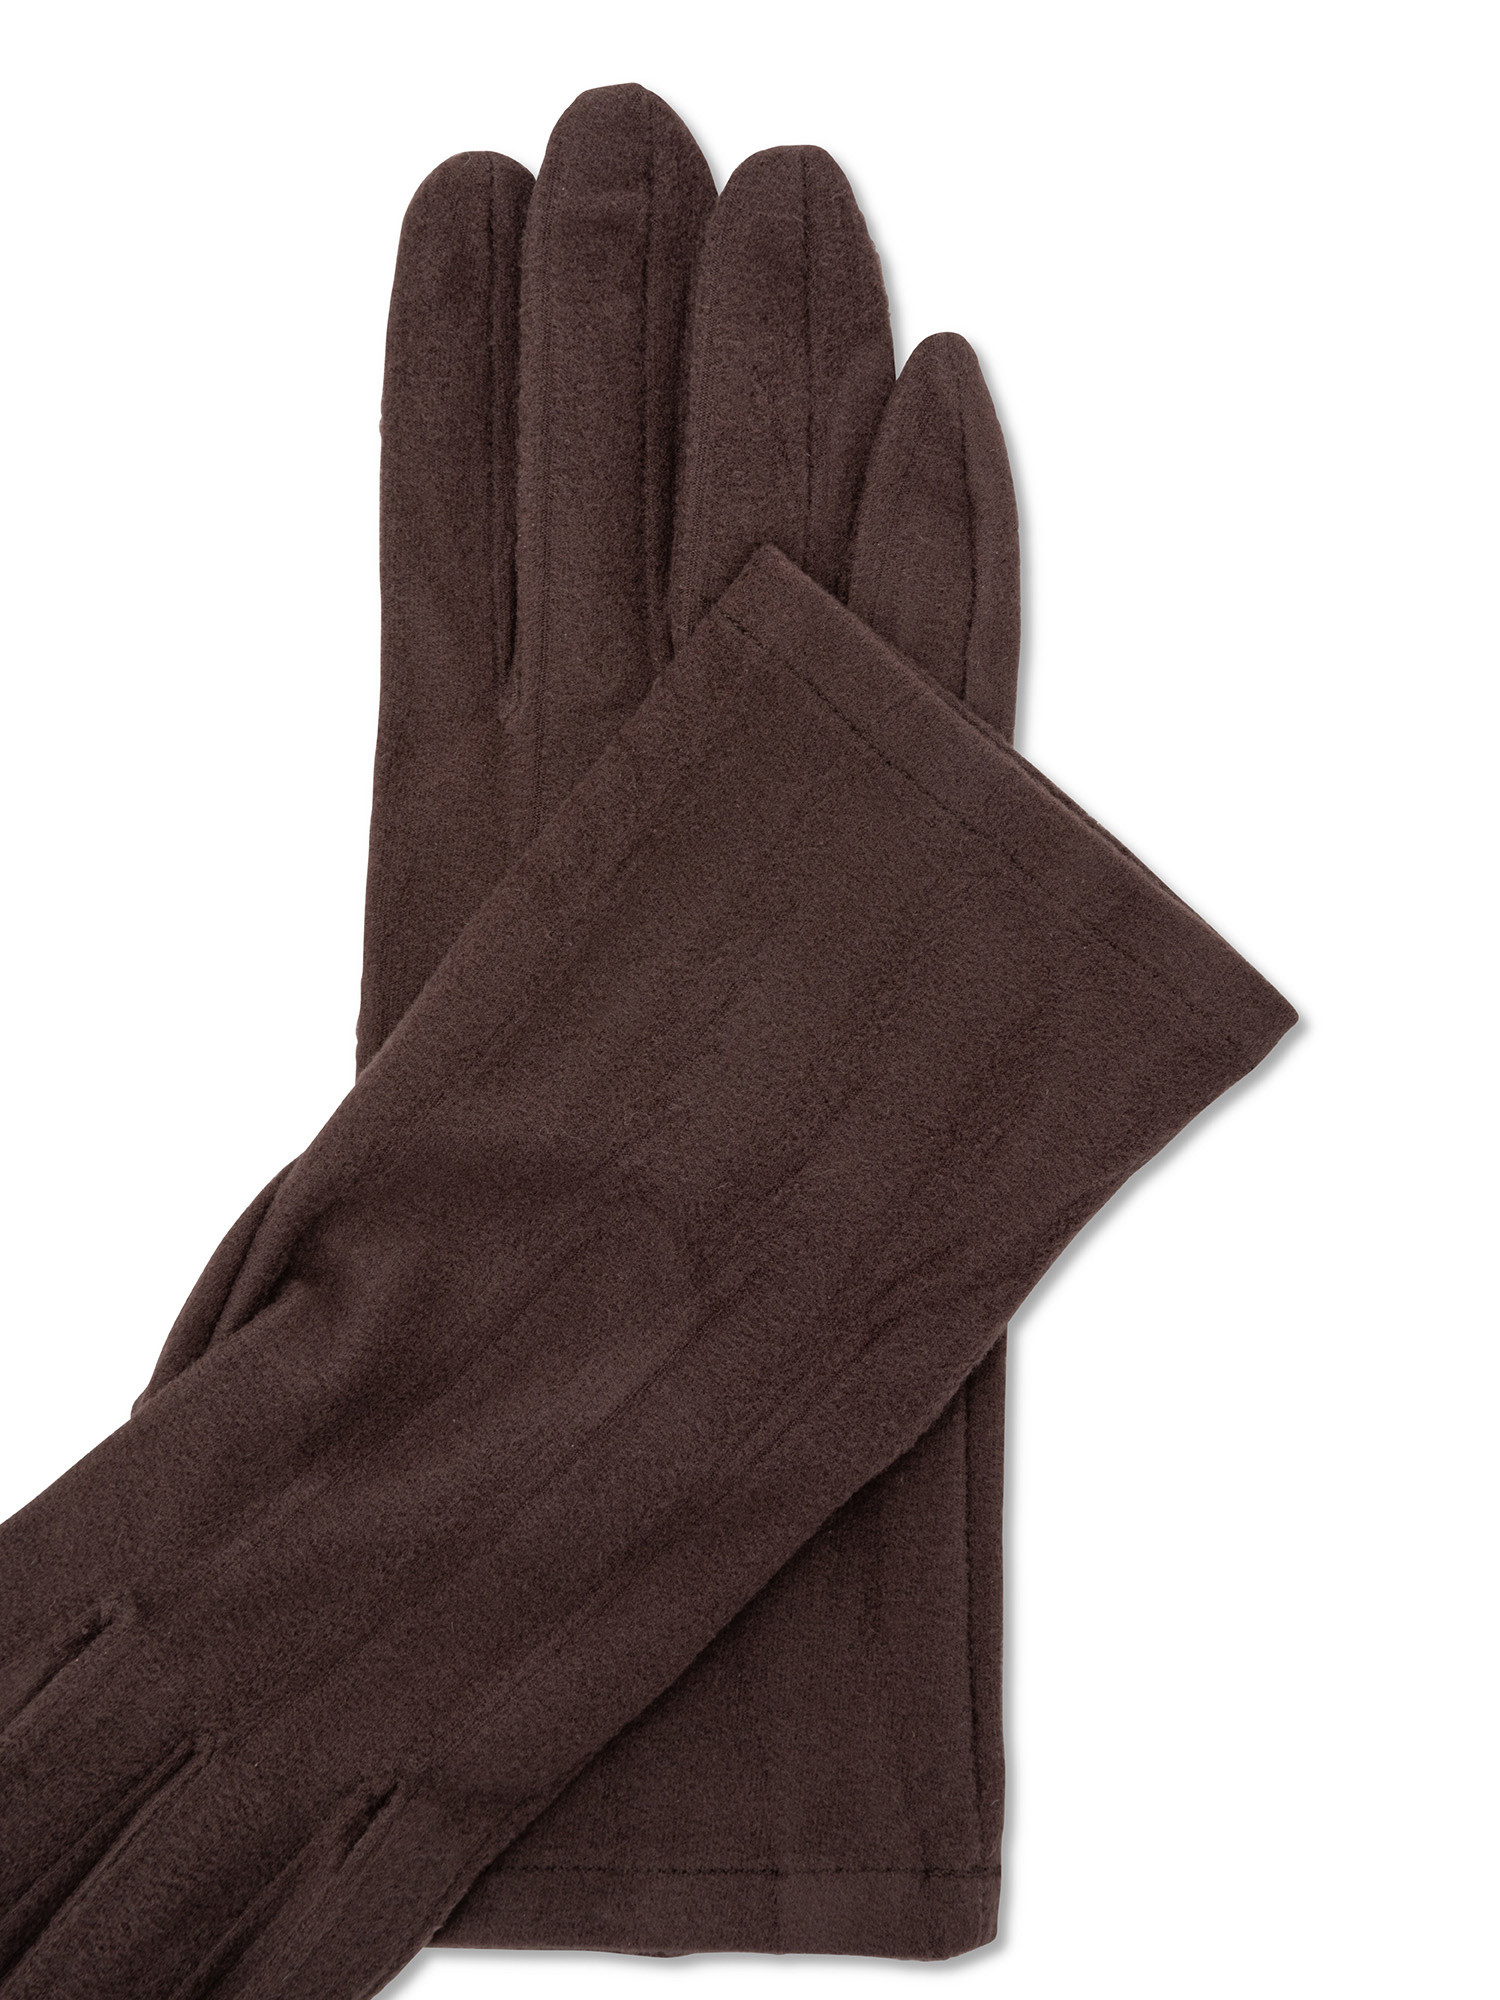 Koan - Solid color microfiber gloves, Dark Grey, large image number 1